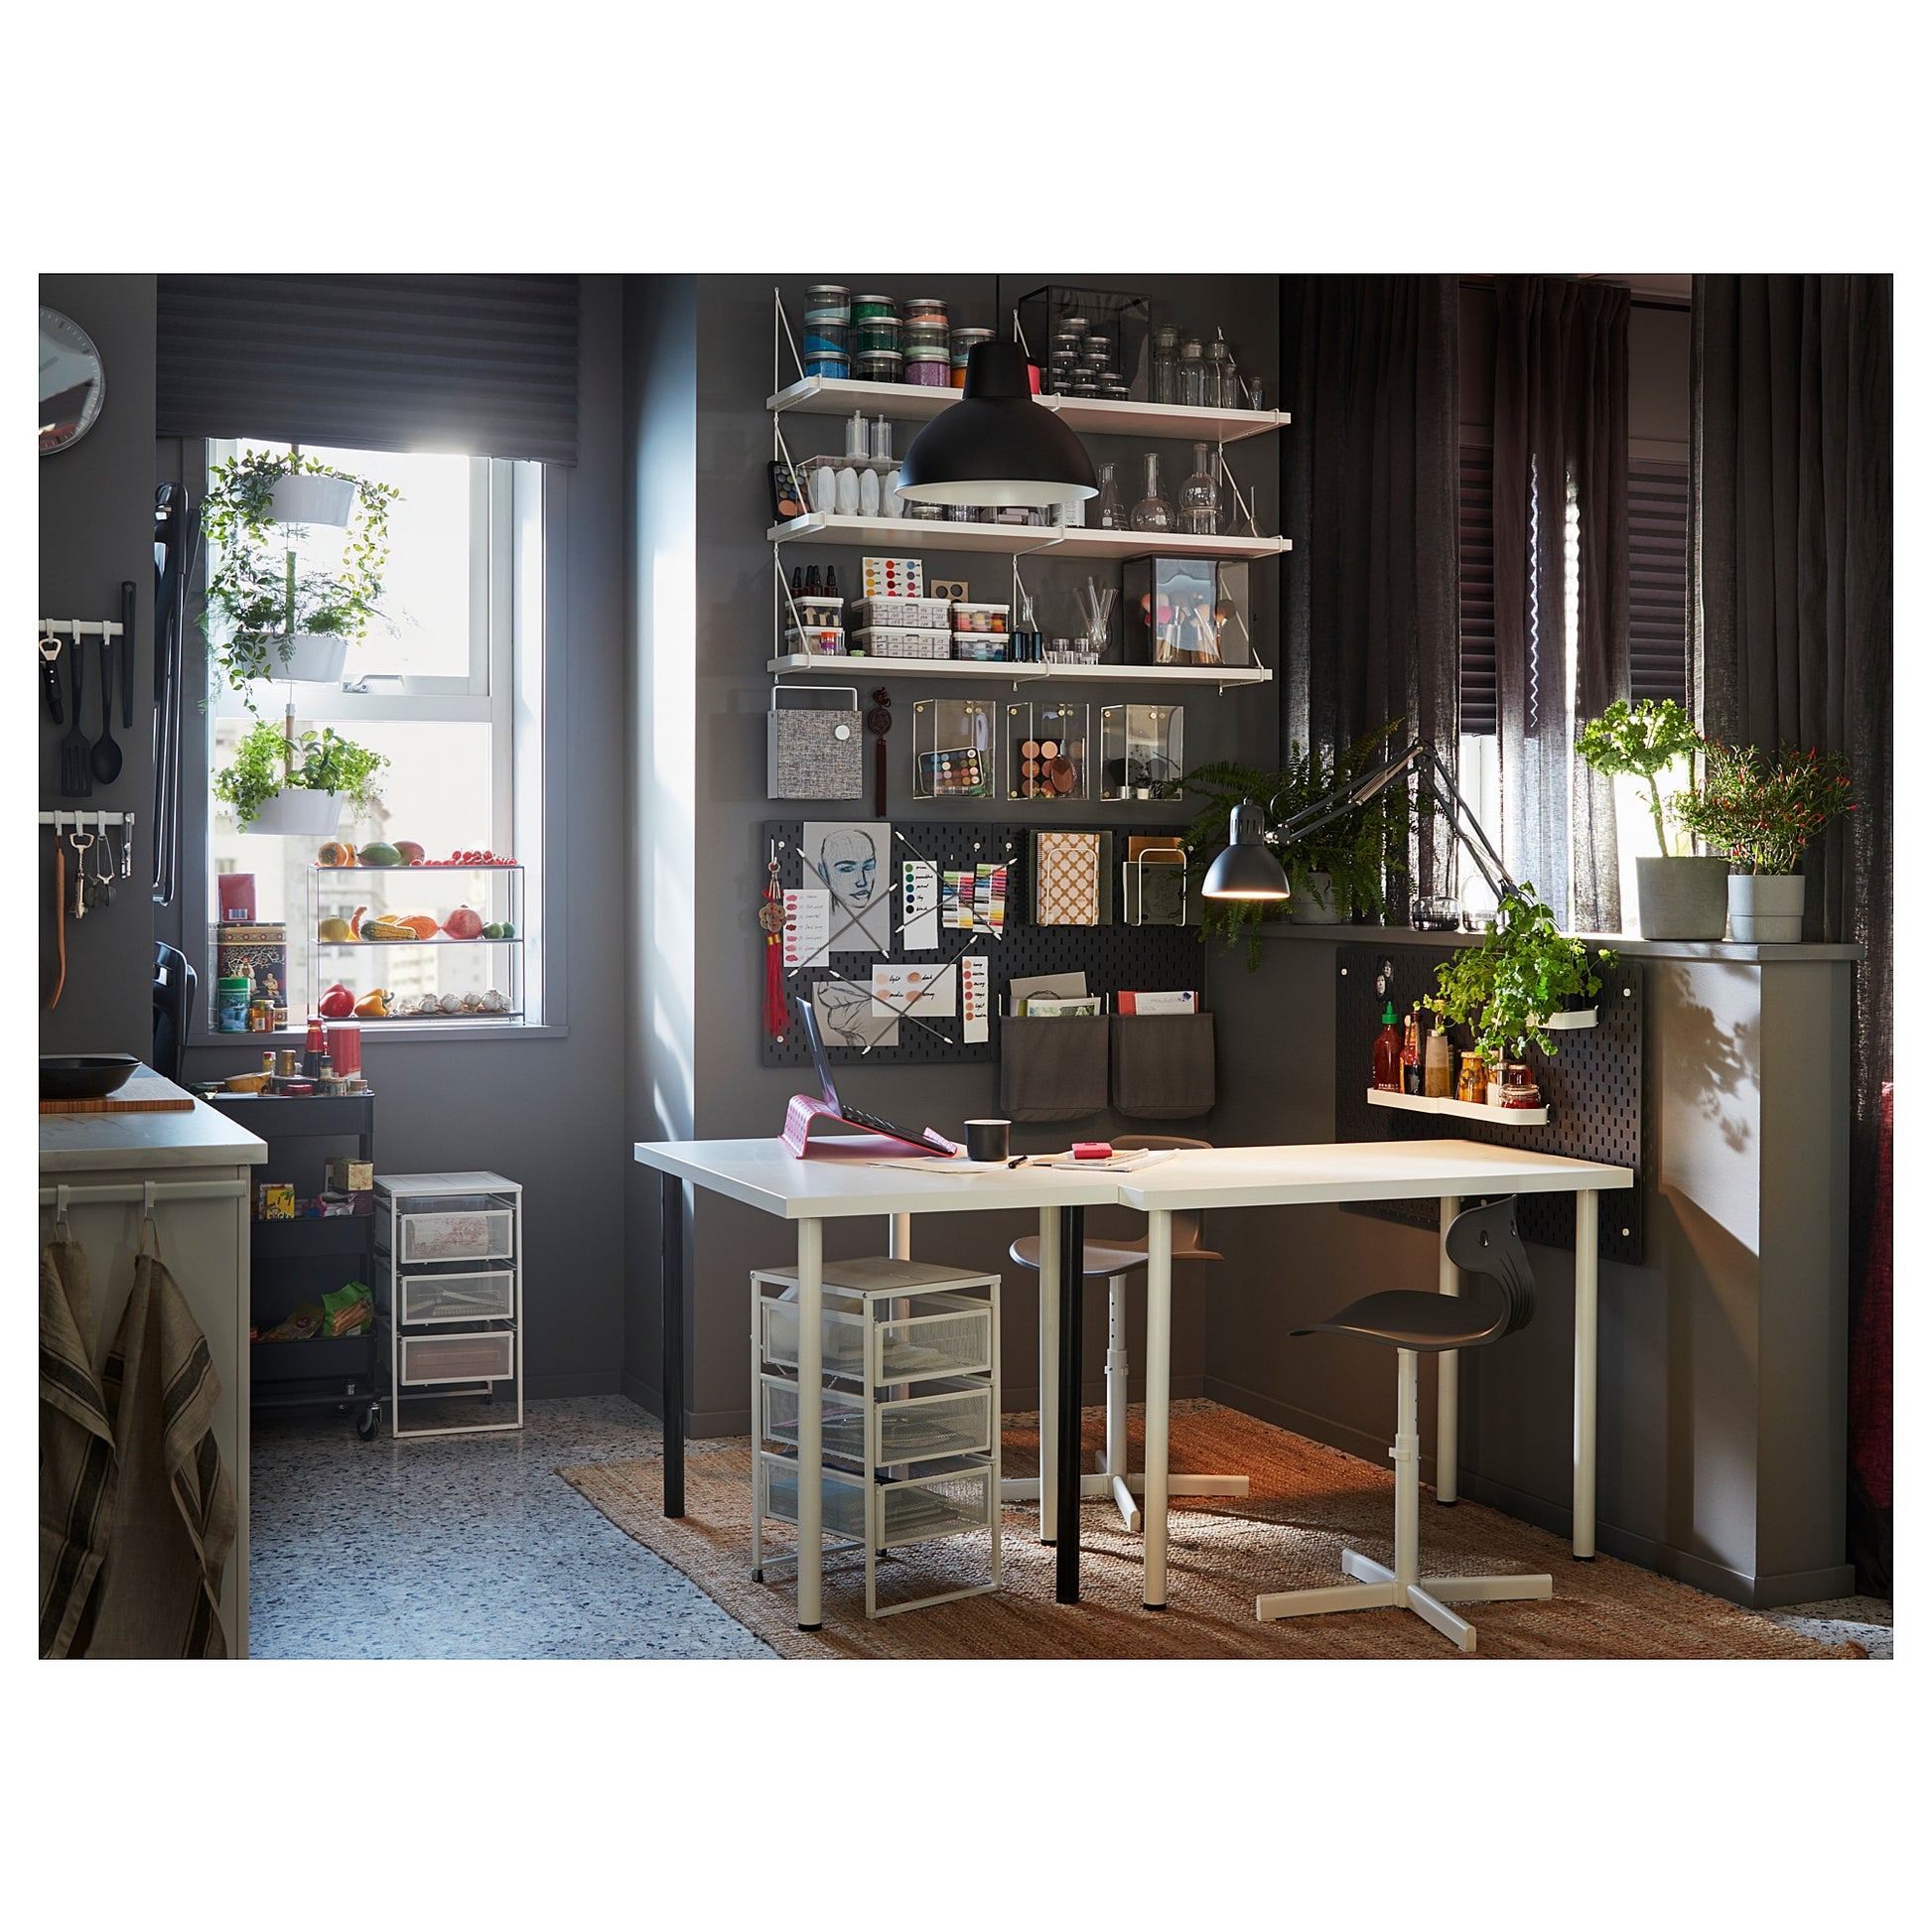 LAGKAPTEN / TILLSLAG desk, white, 200x60 cm - IKEA